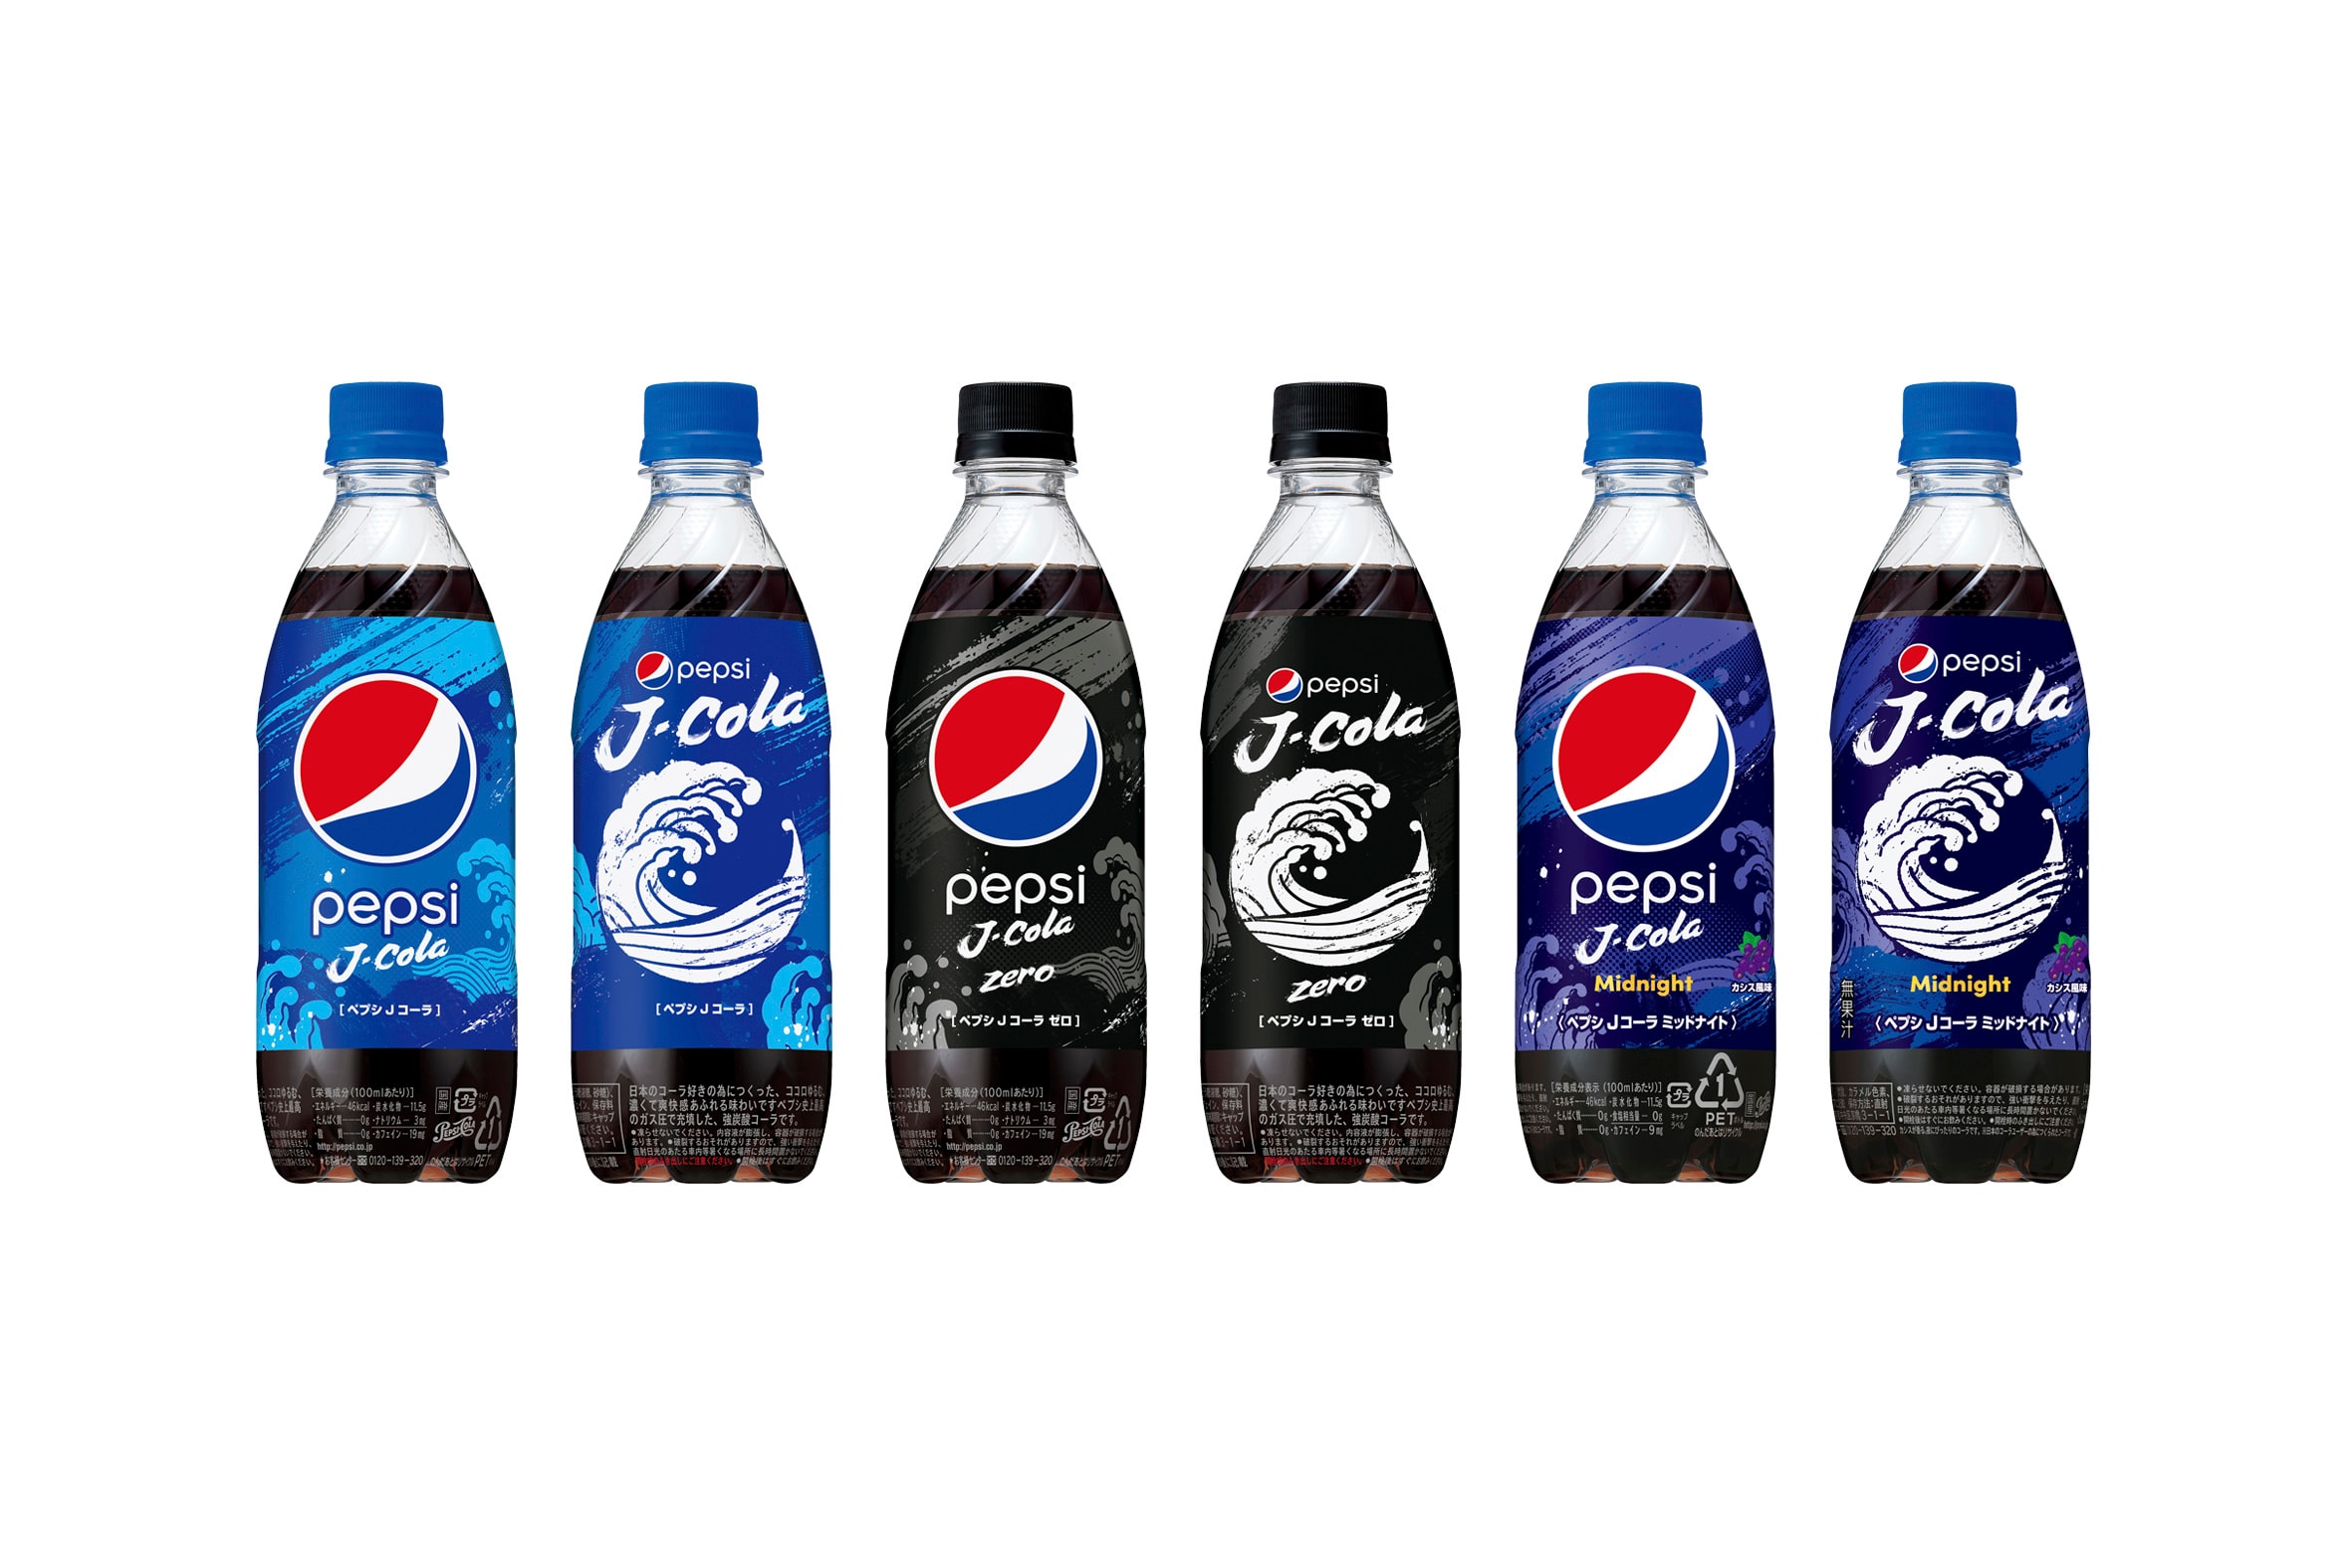 SUNTORY 將在日本推出全新口味的 Pepsi 百事可樂